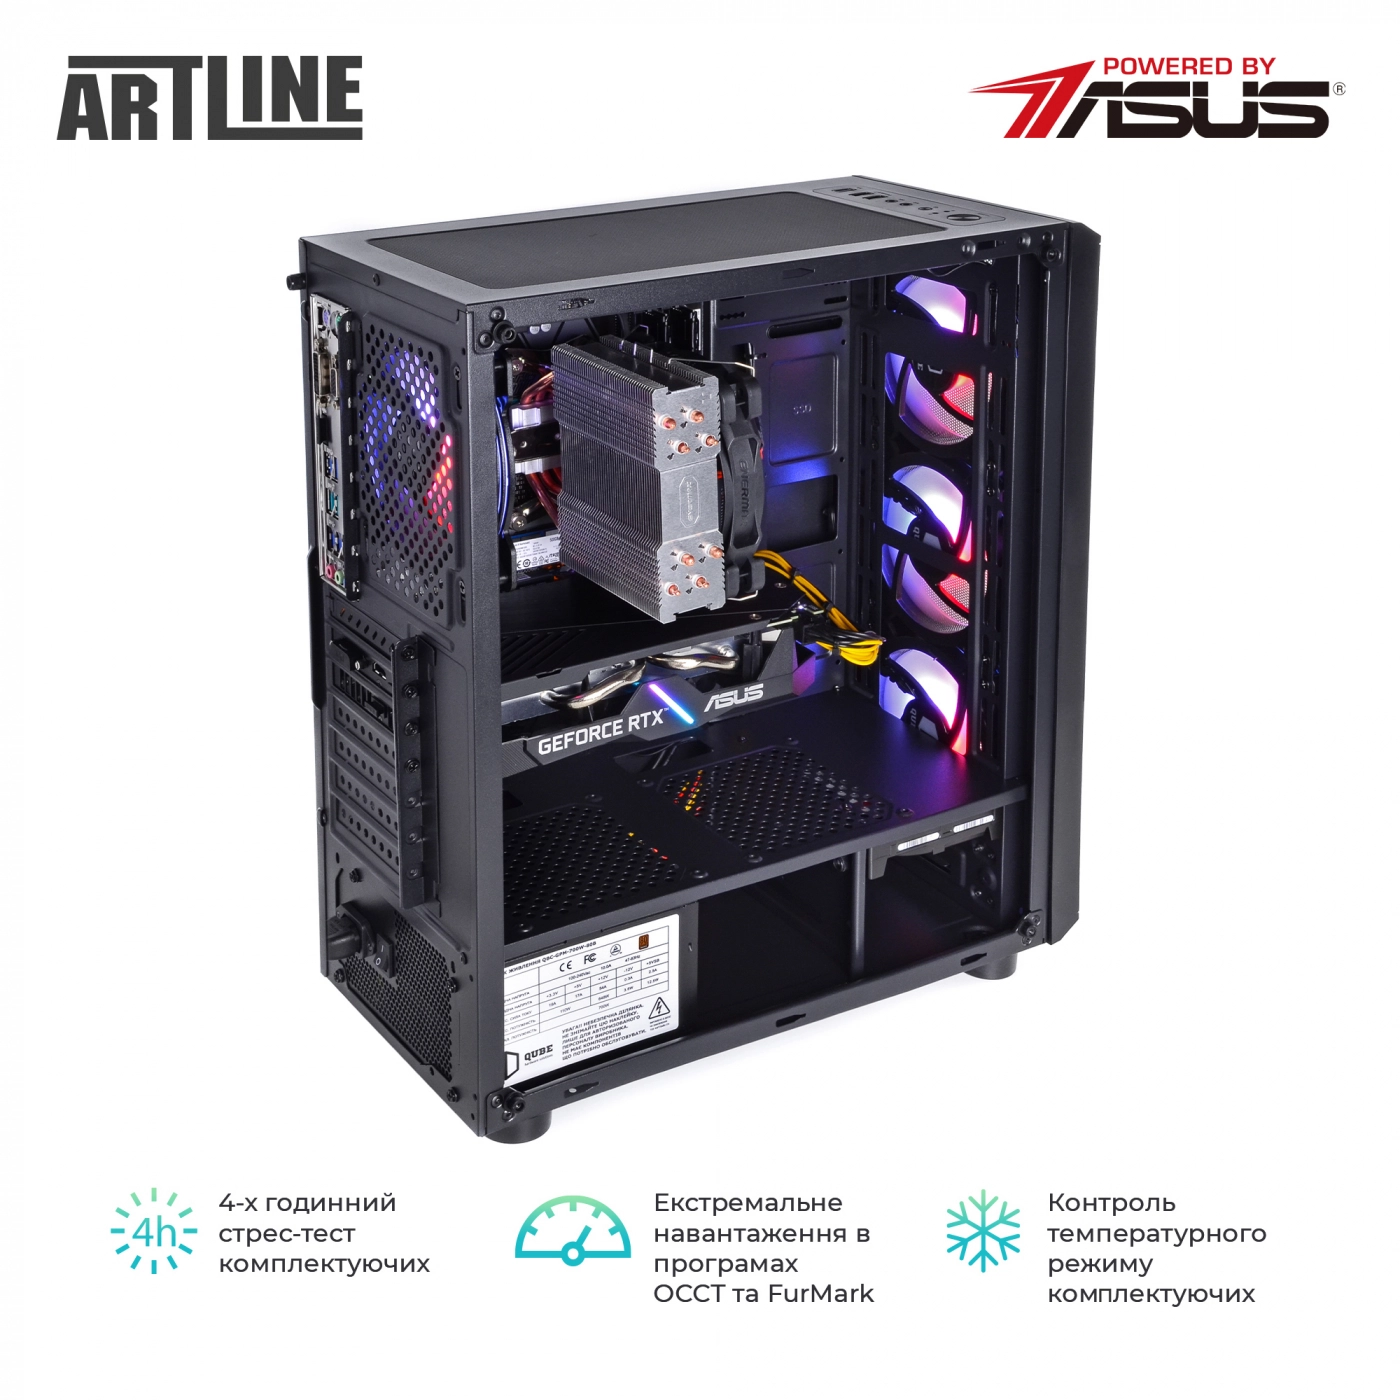 Купить Компьютер ARTLINE Gaming X56v21 - фото 8